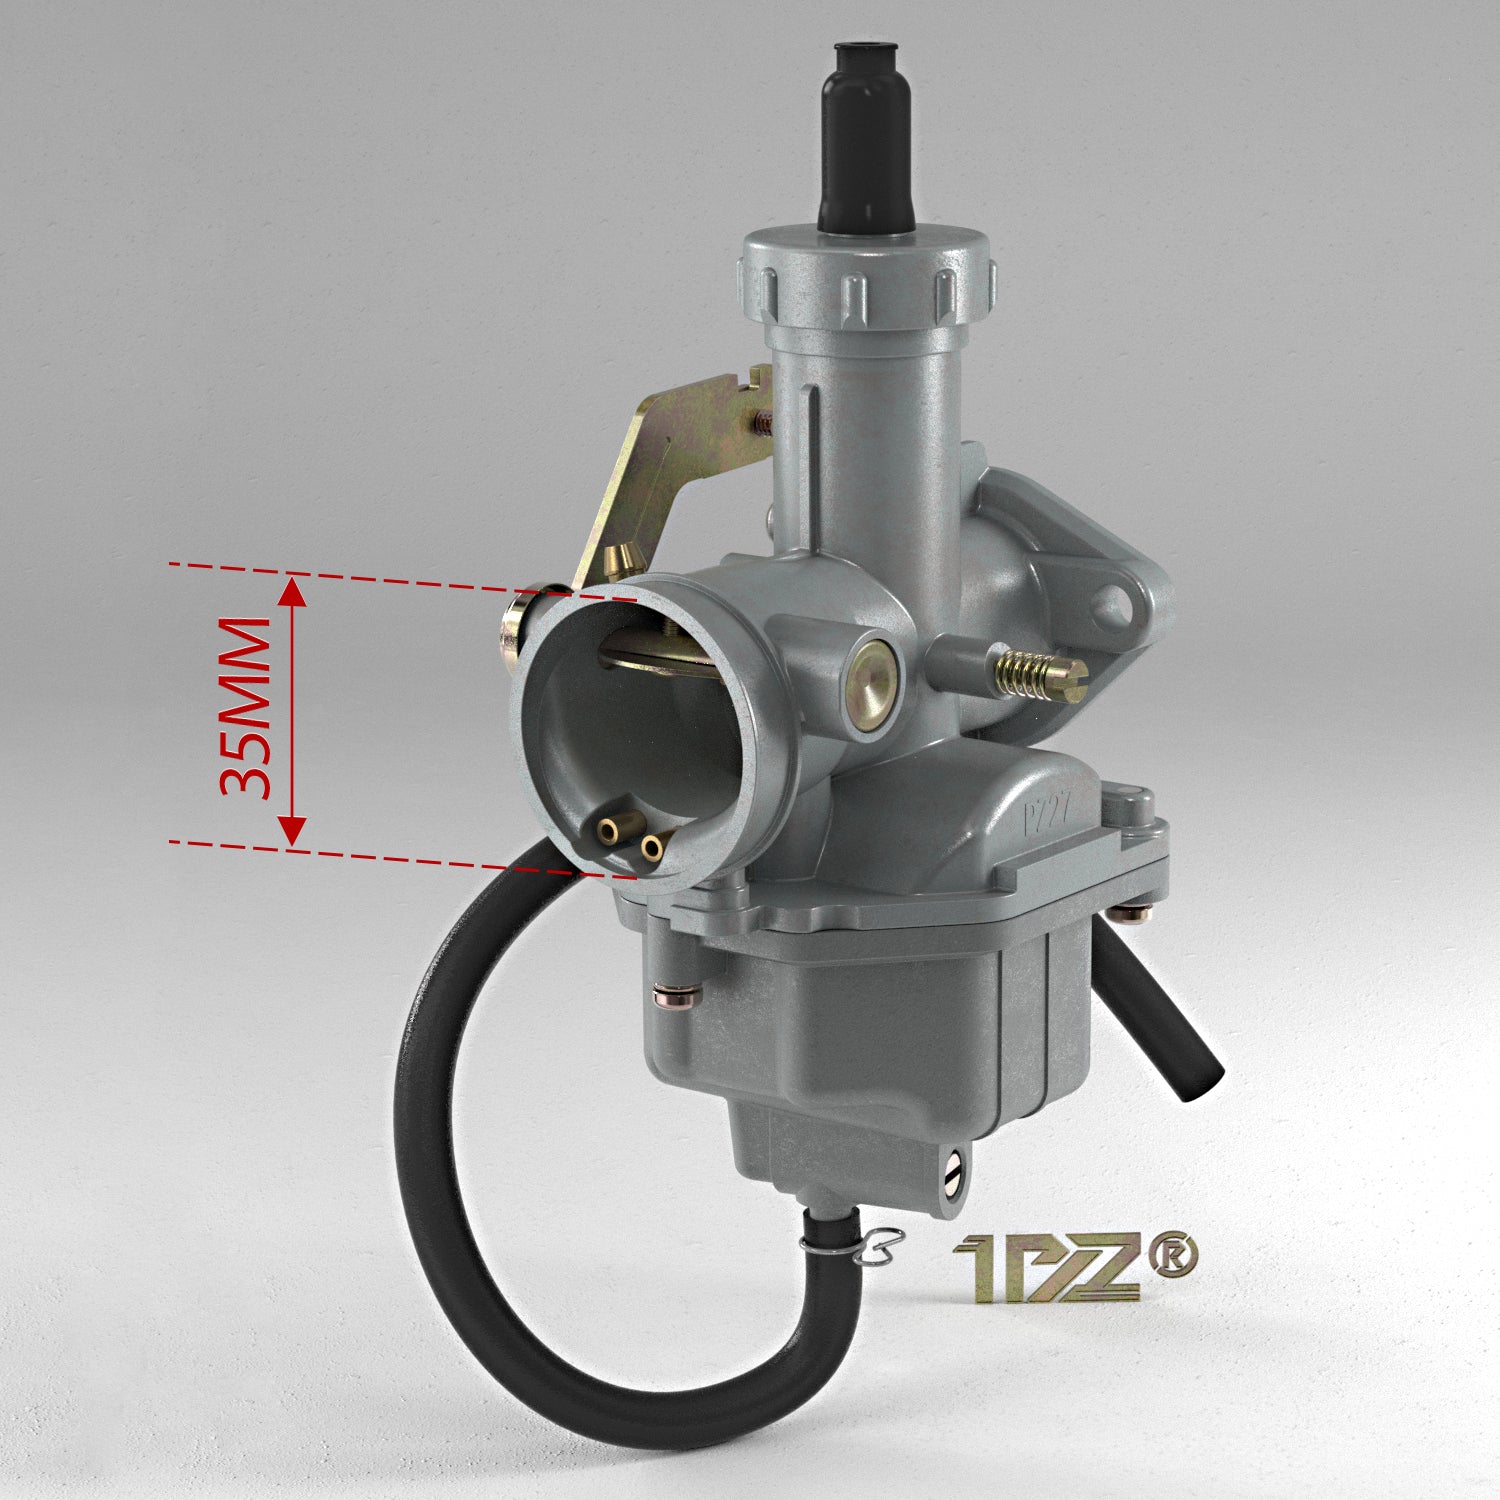 1PZ Carburetor Replacement for Honda CRF150F 2003-2017 OEM 16100-KPT-902 16100-KPT-903 16100-KPT-A01 16100-KPT-A02 16100-KPT-A21 16100-KPT-A22 16100-KPT-A61 (PDD6J A) ATV